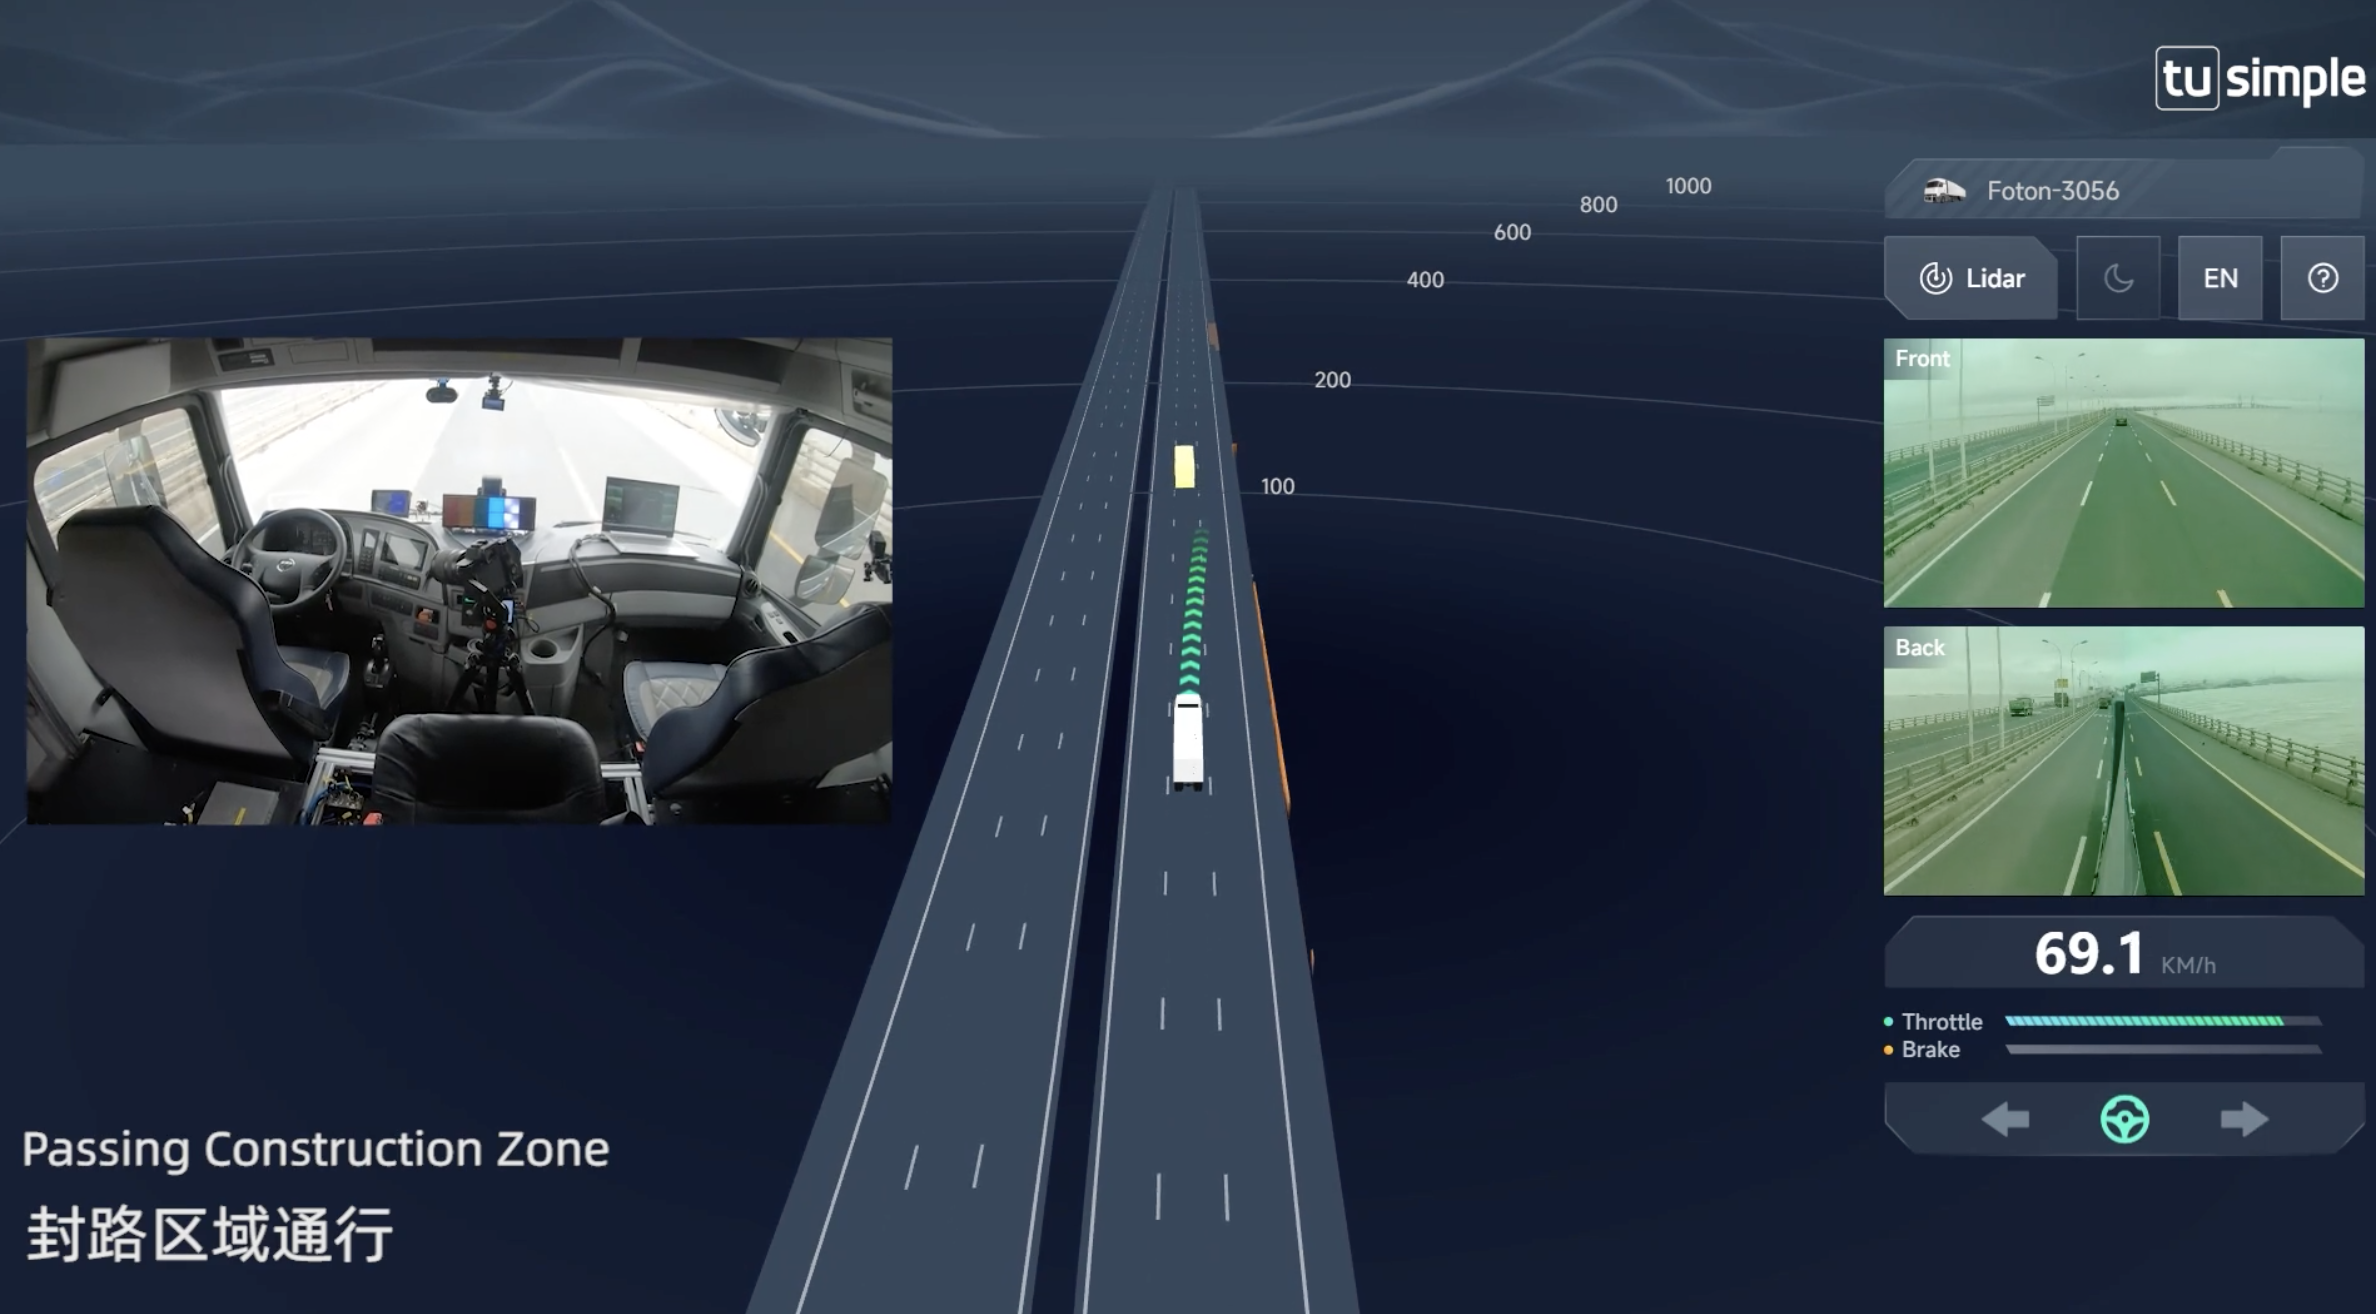 图森完成国内首次自动驾驶重卡在公开道路的全无人化测试